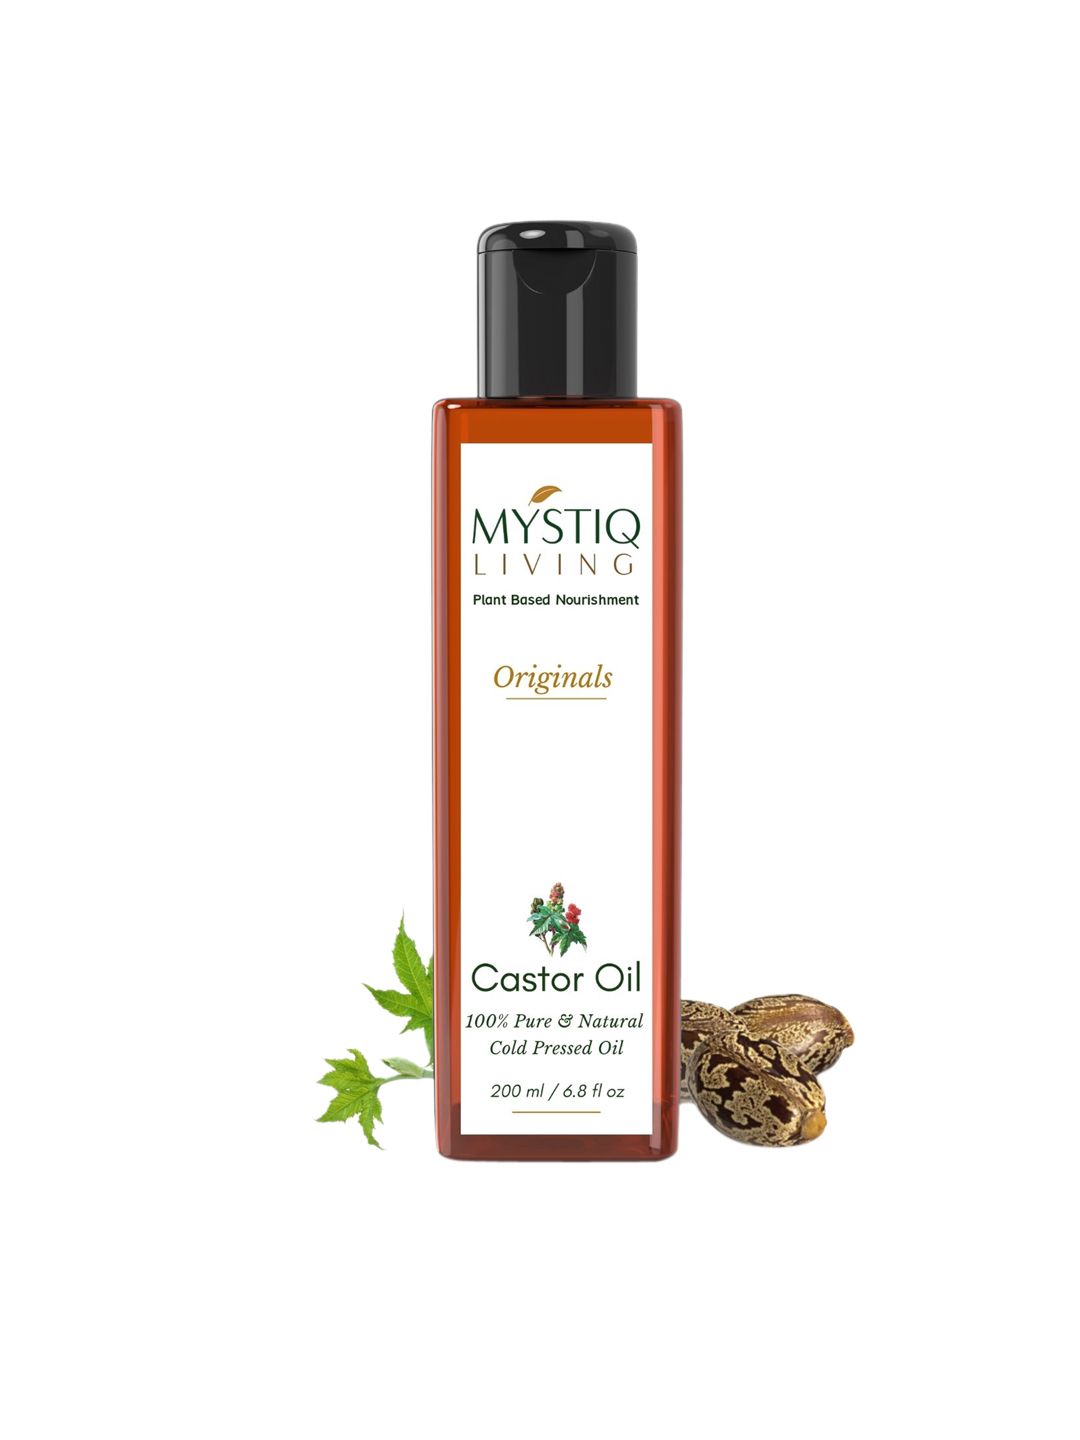 MYSTIQ LIVING Nature's Perspective Original Castor Oil 200 ml Price in India